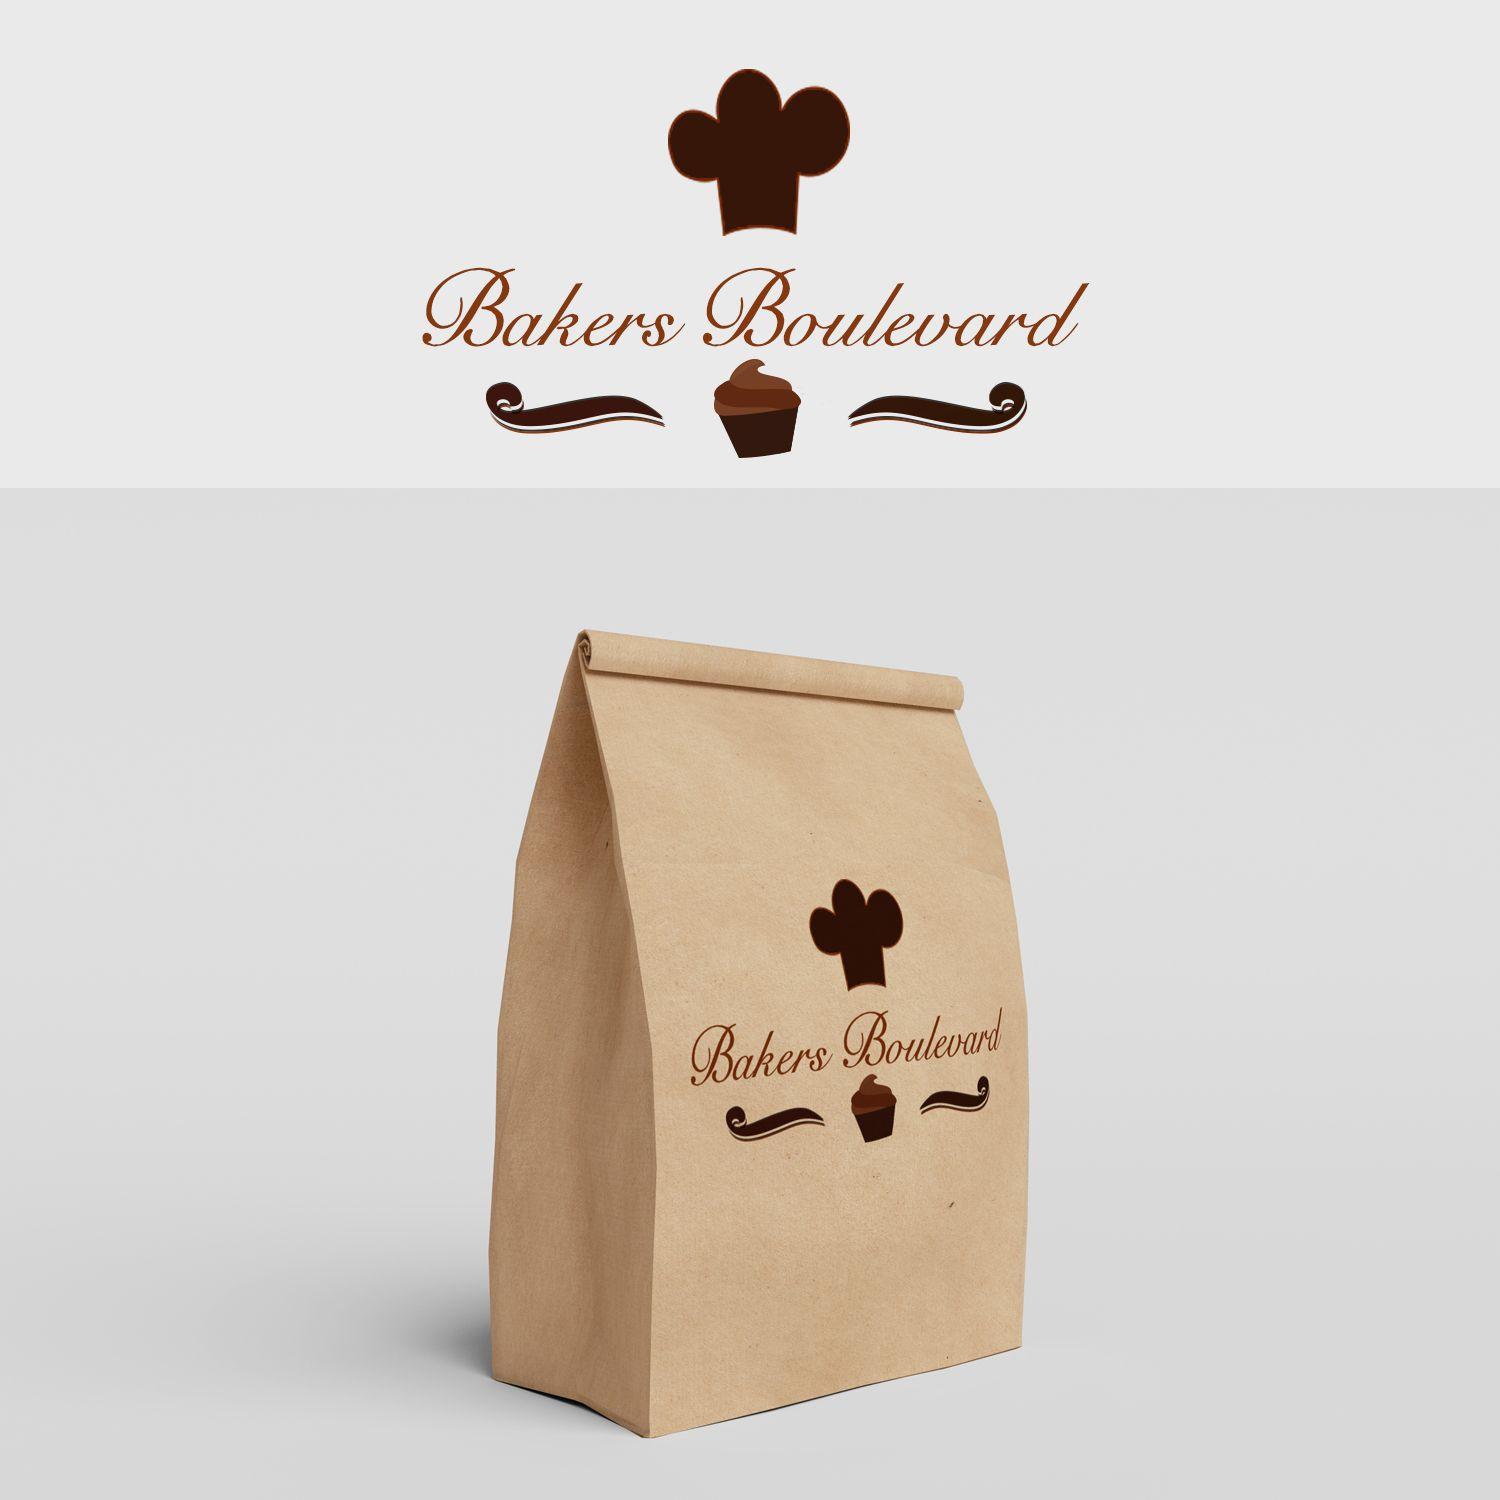 Kangaroo Bakery Logo - Modern, Elegant, Bakery Logo Design for Bakers' Boulevard